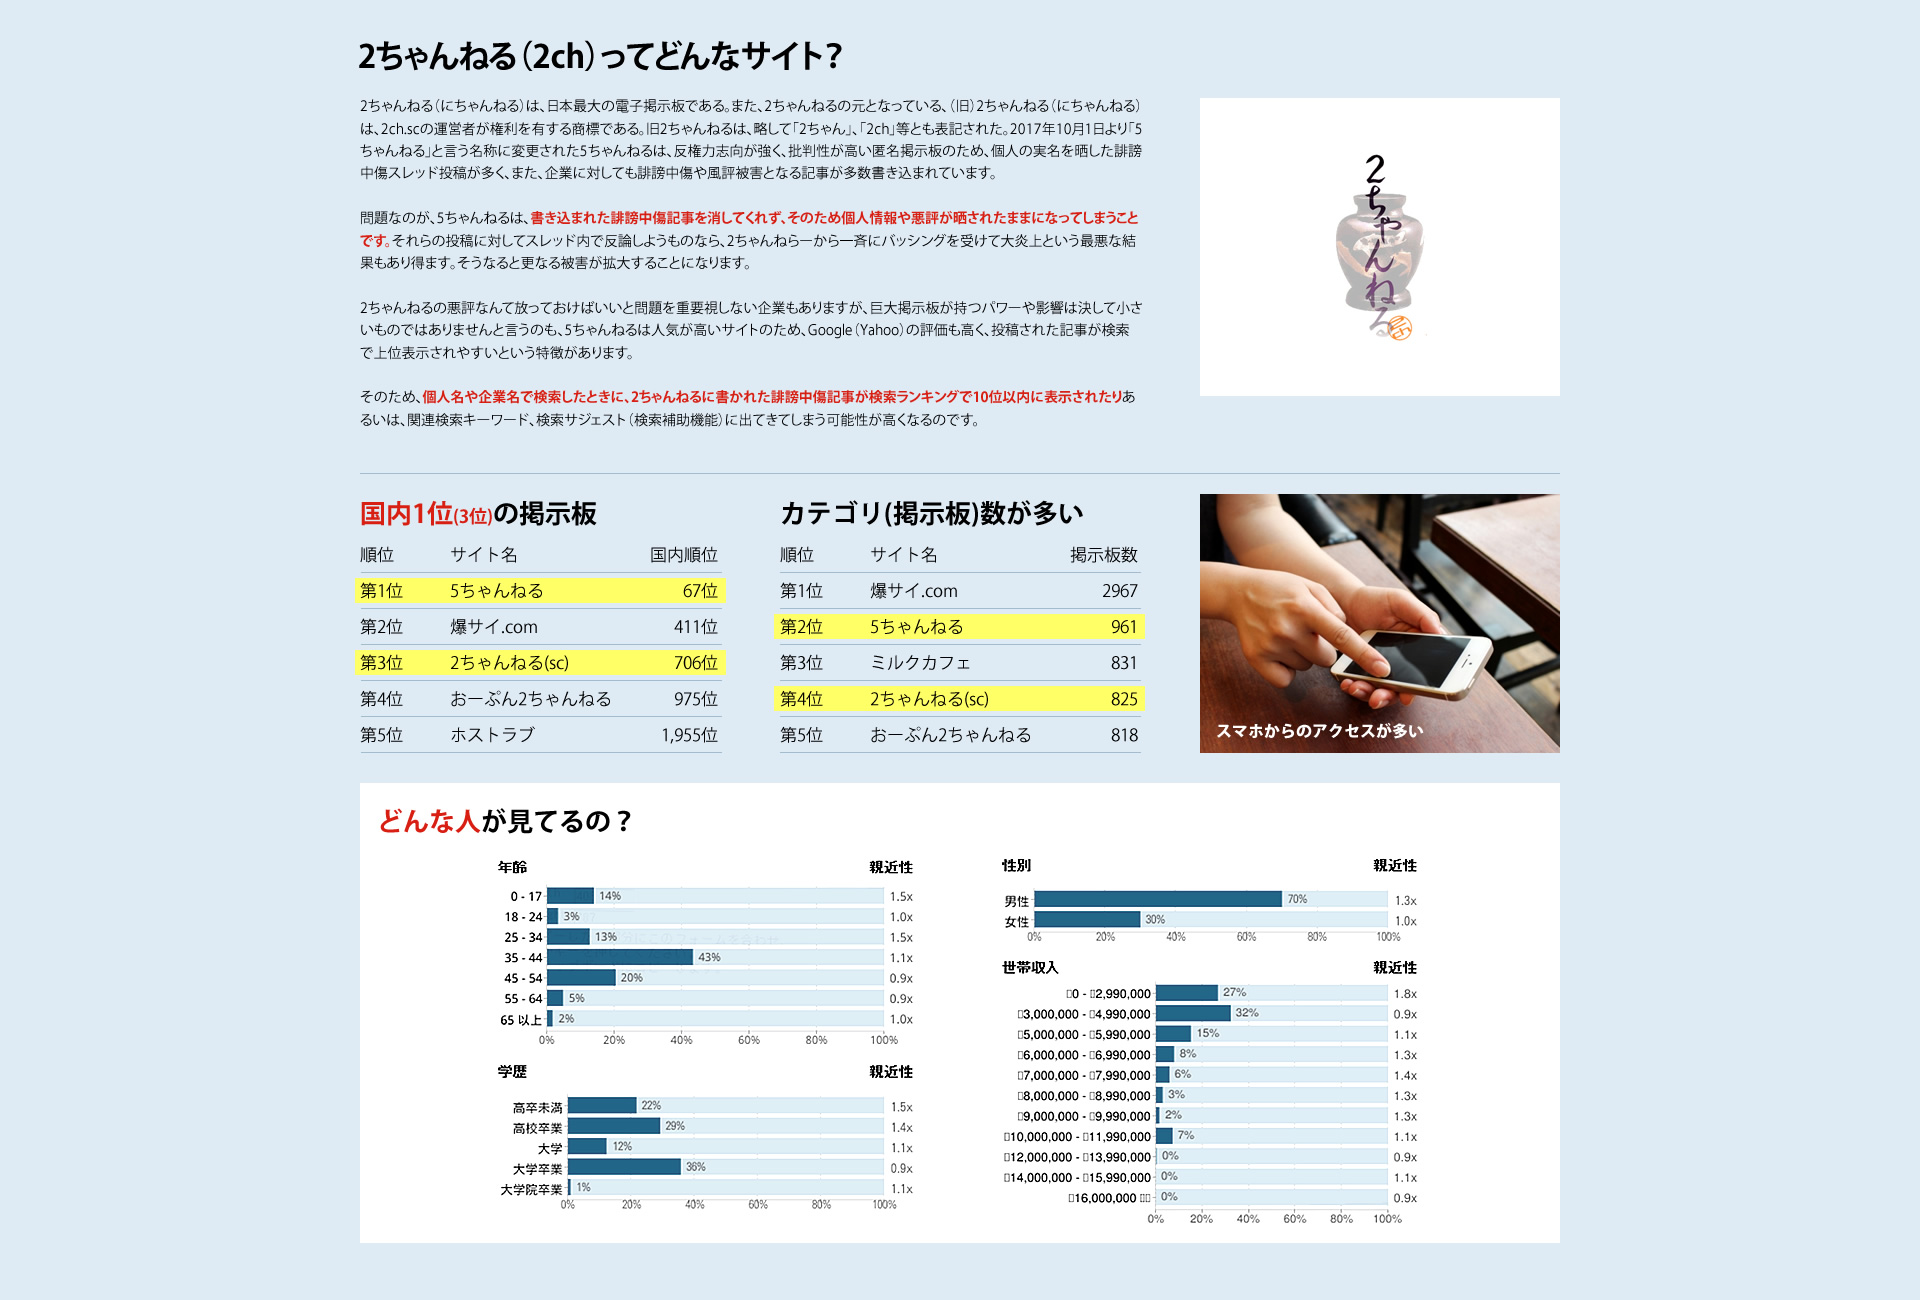 2ちゃんねる（2ch）ってどんなサイト？
2ちゃんねる（にちゃんねる）は、日本最大の電子掲示板である。また、2ちゃんねるの元となっている、（旧）2ちゃんねる（にちゃんねる）は、2ch.scの運営者が権利を有する商標である。旧2ちゃんねるは、略して「2ちゃん」、「2ch」等とも表記された。2017年10月1日より「5ちゃんねる」と言う名称に変更された5ちゃんねるは、反権力志向が強く、批判性が高い匿名掲示板のため、個人の実名を晒した誹謗中傷スレッド投稿が多く、また、企業に対しても誹謗中傷や風評被害となる記事が多数書き込まれています。問題なのが、5ちゃんねるは、書き込まれた誹謗中傷記事を消してくれず、そのため個人情報や悪評が晒されたままになってしまうことです。それらの投稿に対してスレッド内で反論しようものなら、2ちゃんねらーから一斉にバッシングを受けて大炎上という最悪な結果もあり得ます。そうなると更なる被害が拡大することになります。2ちゃんねるの悪評なんて放っておけばいいと問題を重要視しない企業もありますが、巨大掲示板が持つパワーや影響は決して小さいものではありませんと言うのも、5ちゃんねるは人気が高いサイトのため、Google（Yahoo）の評価も高く、投稿された記事が検索で上位表示されやすいという特徴があります。そのため、個人名や企業名で検索したときに、2ちゃんねるに書かれた誹謗中傷記事が検索ランキングで10位以内に表示されたりあるいは、関連検索キーワード、検索サジェスト（検索補助機能）に出てきてしまう可能性が高くなるのです。